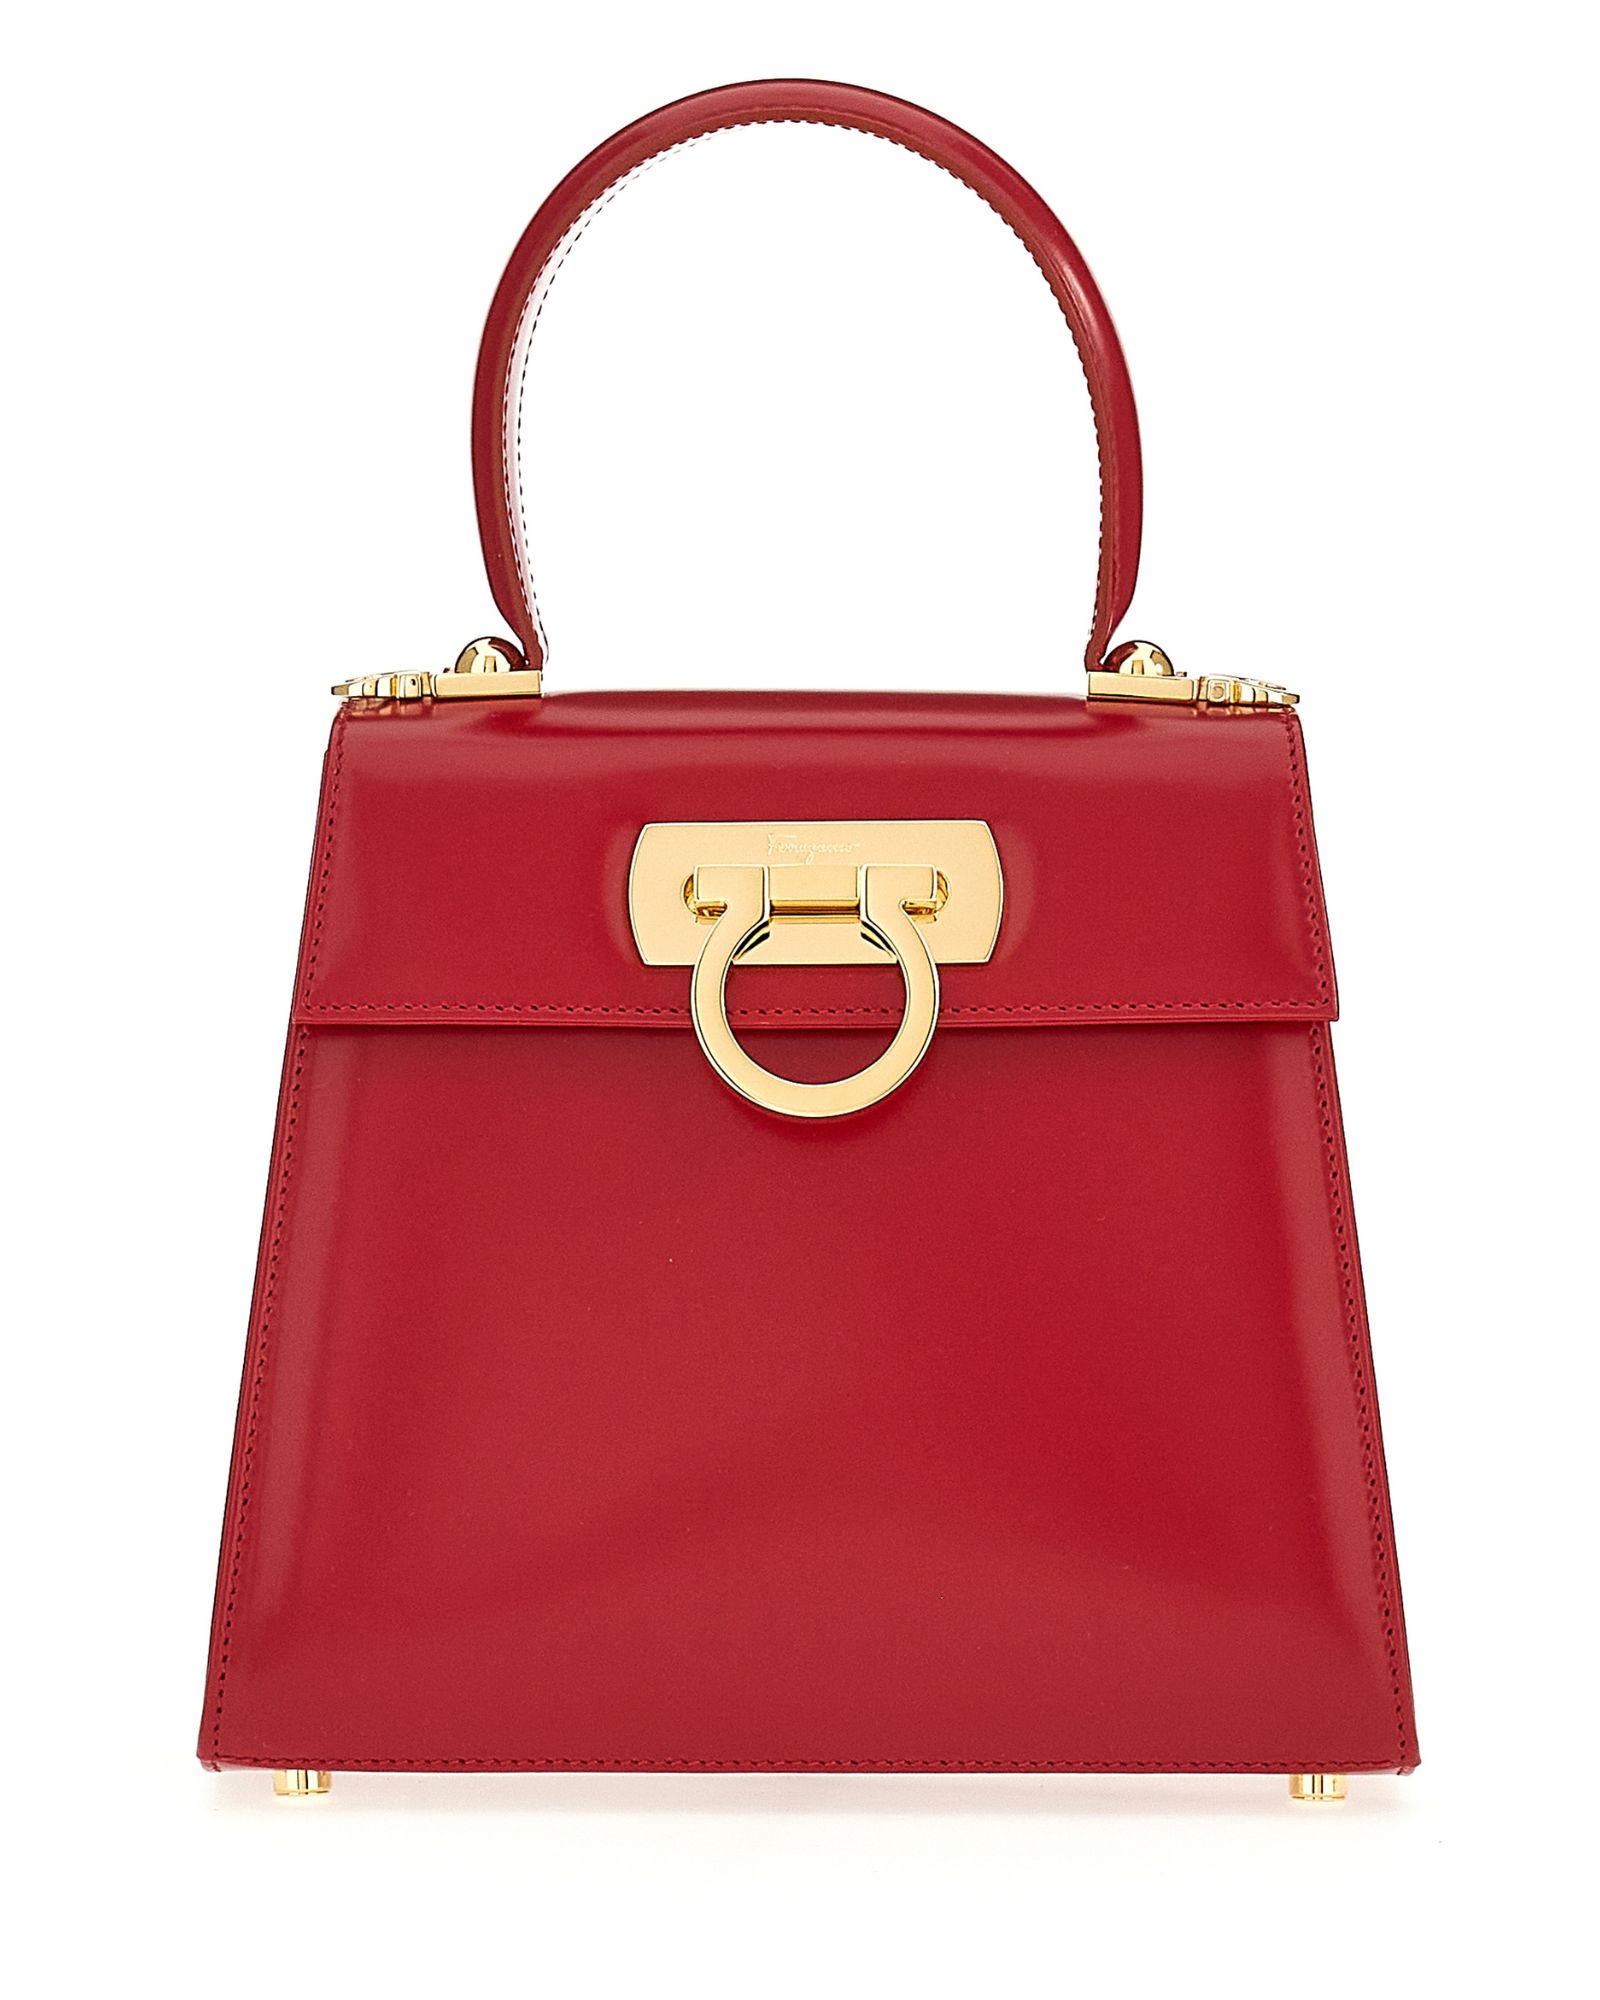 Ferragamo Iconic Top Handle Handbag